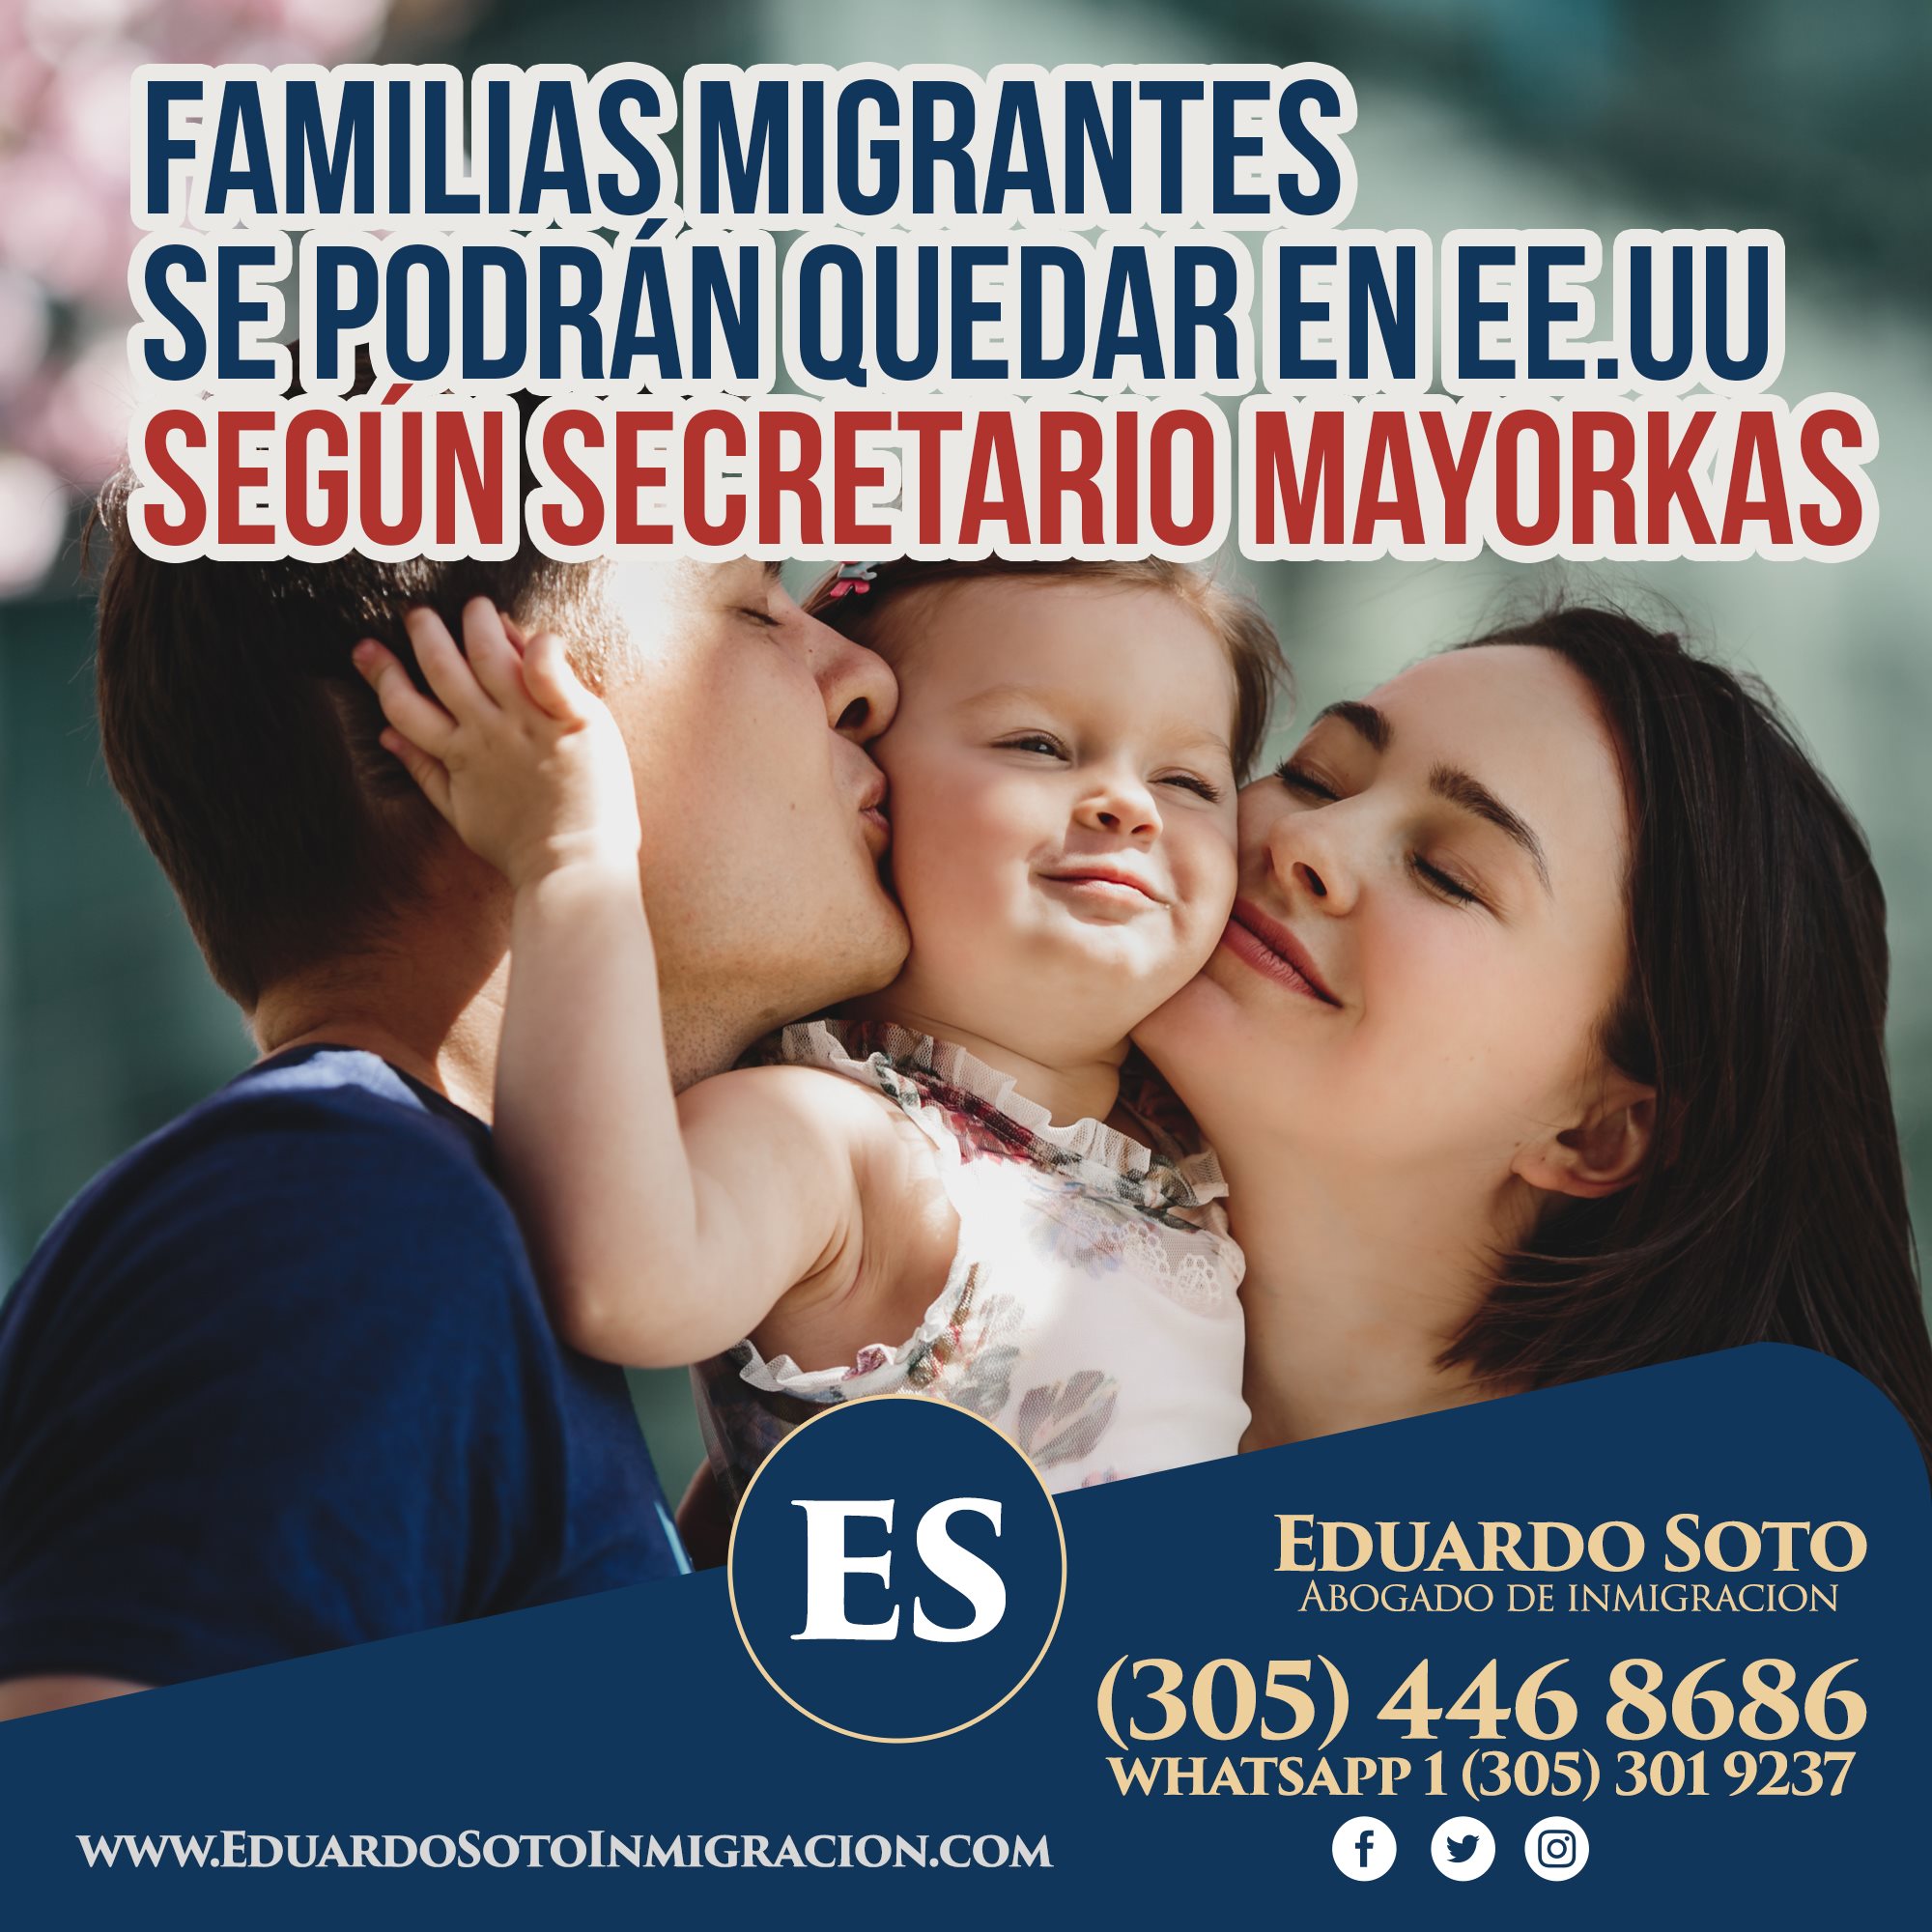 Familias migrantes se podrán quedar en EE.UU según secretario Mayorkas